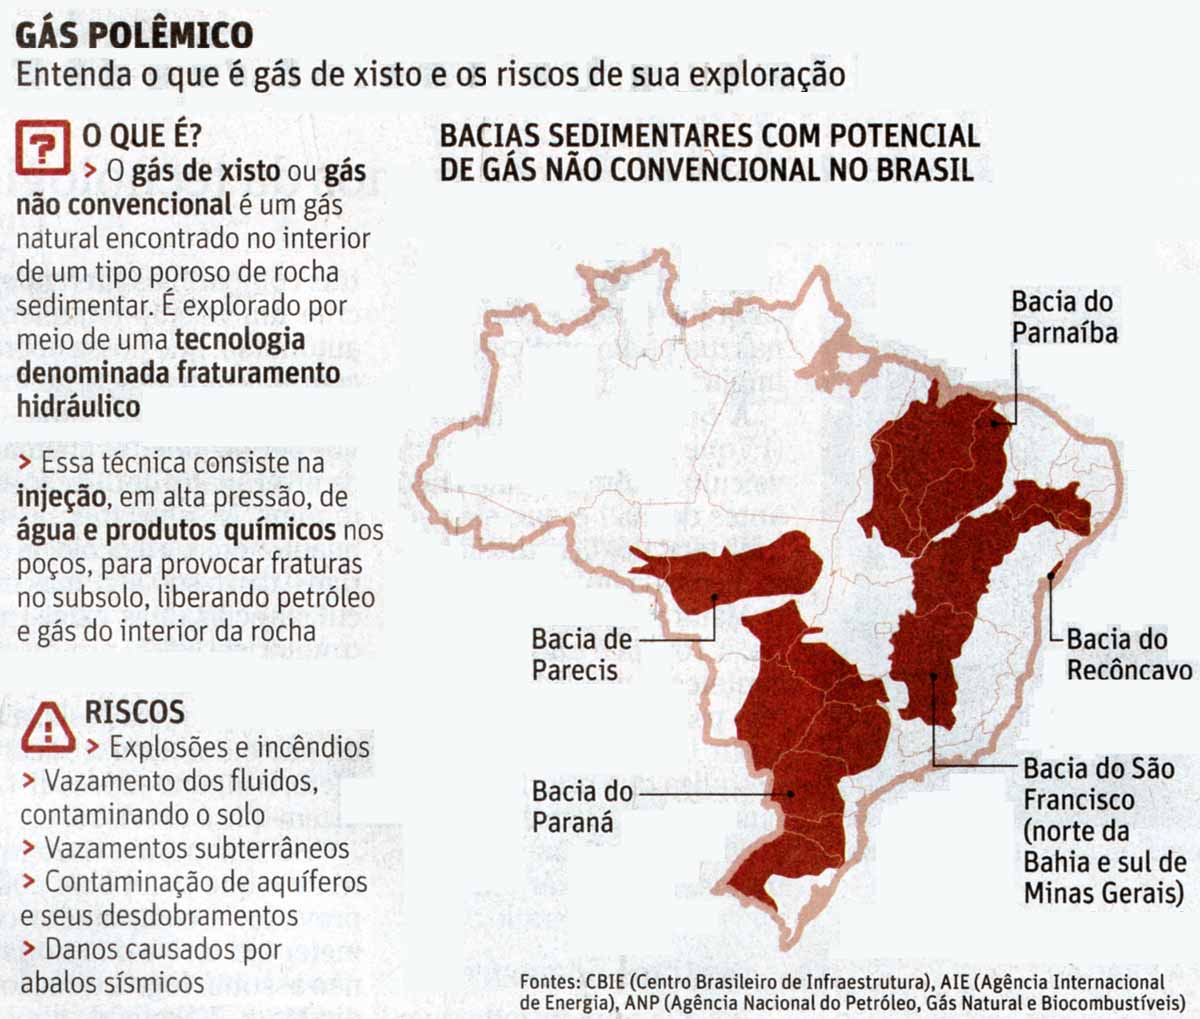 Gs de Xisto: A polmica - Folha / 24.07.2016